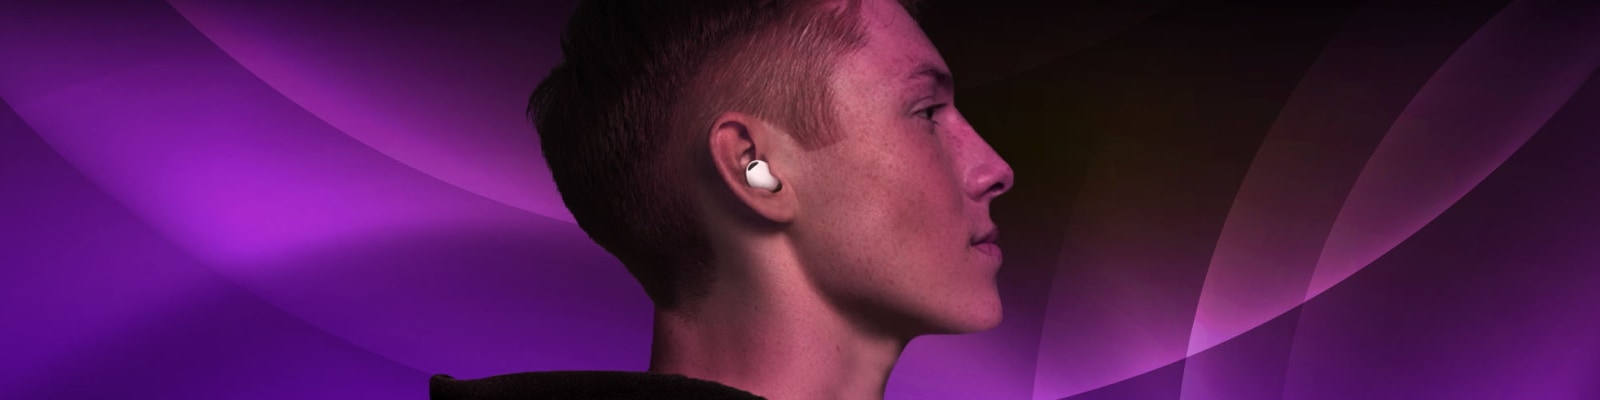 Okkernoot stil Verandert in Draadloze bluetooth oortjes: zo kies je de juiste oordopjes | Samsung & You  | Samsung Nederland